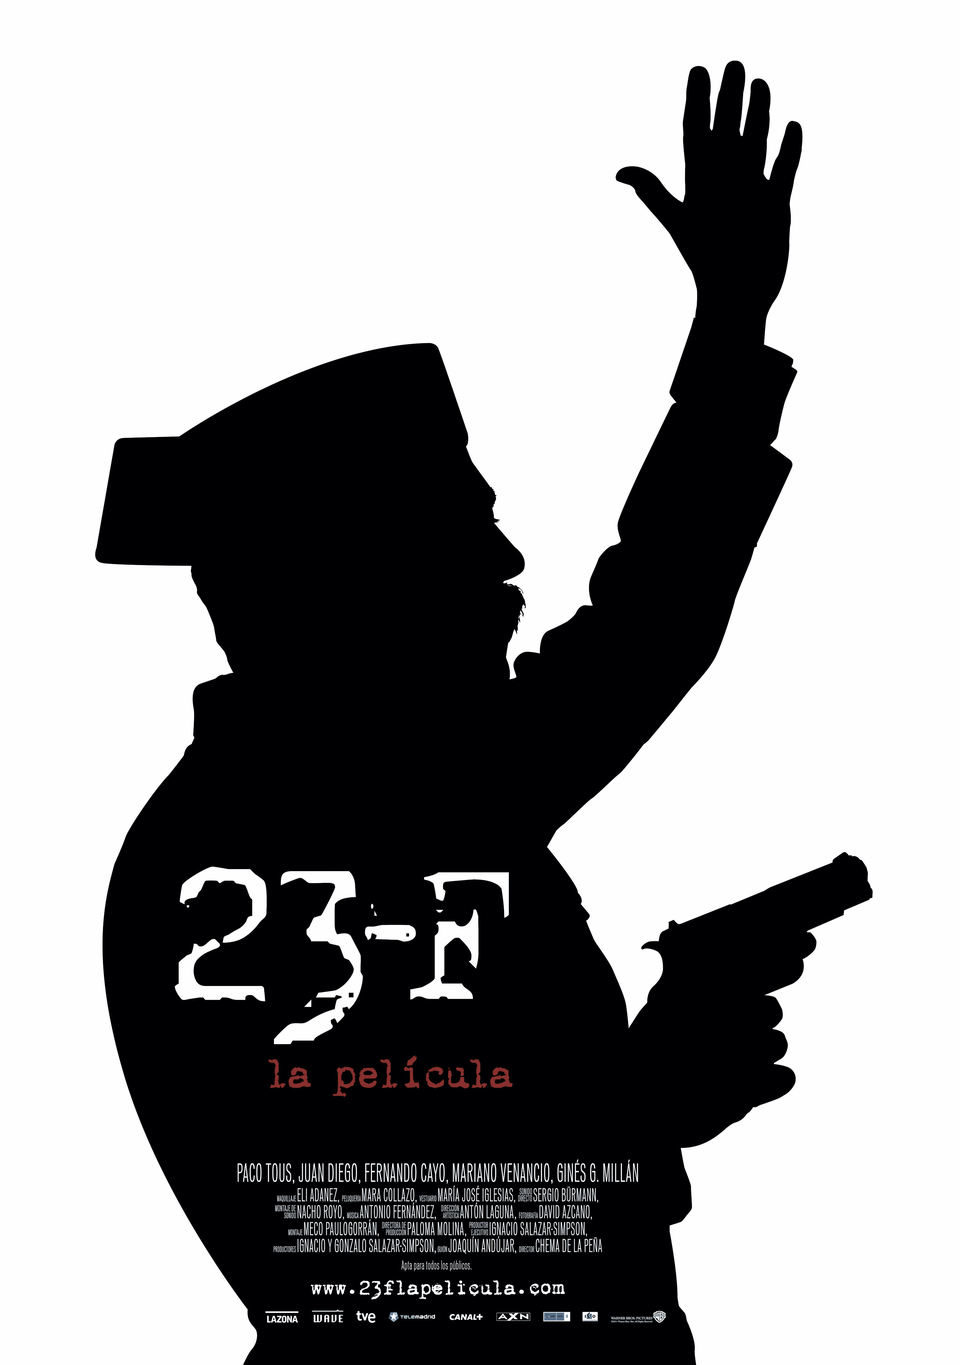 Poster of 23-F - España